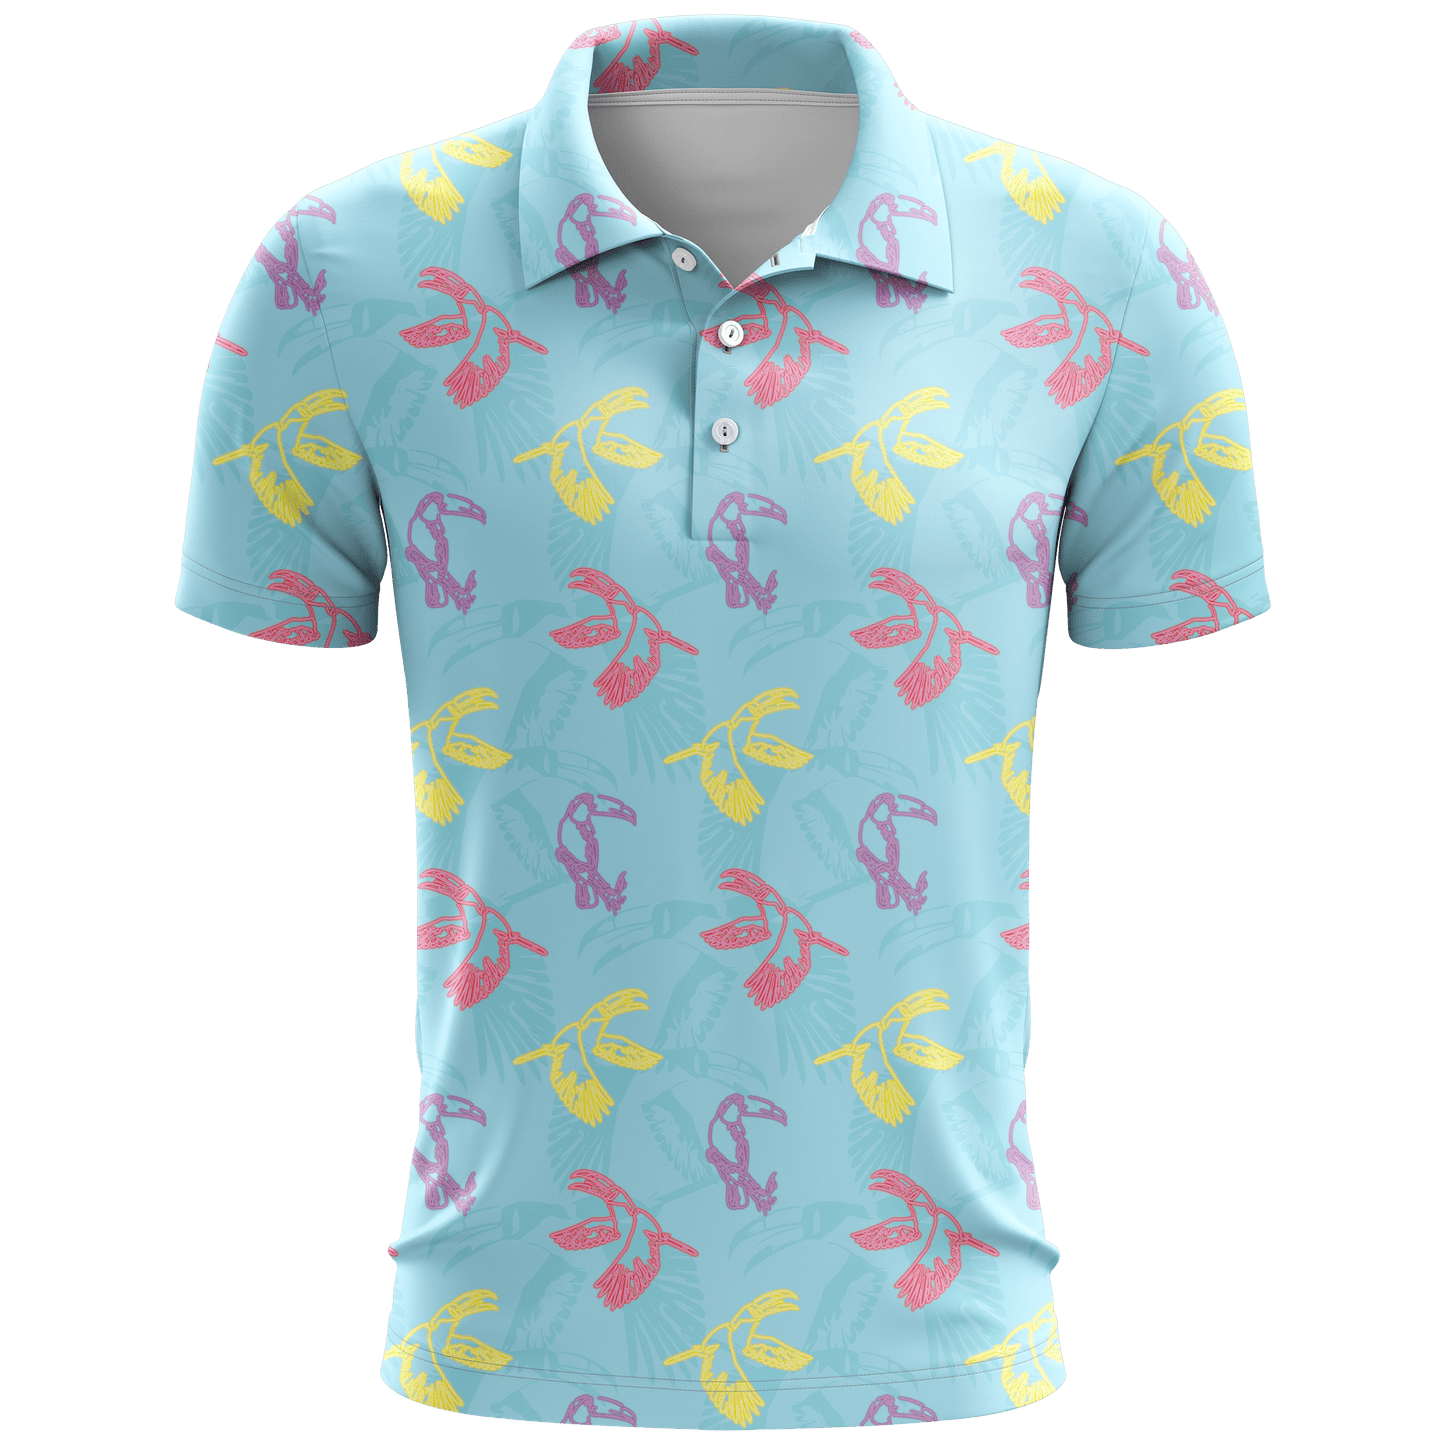 Neon Toucans Sky Men's Polo Shirt